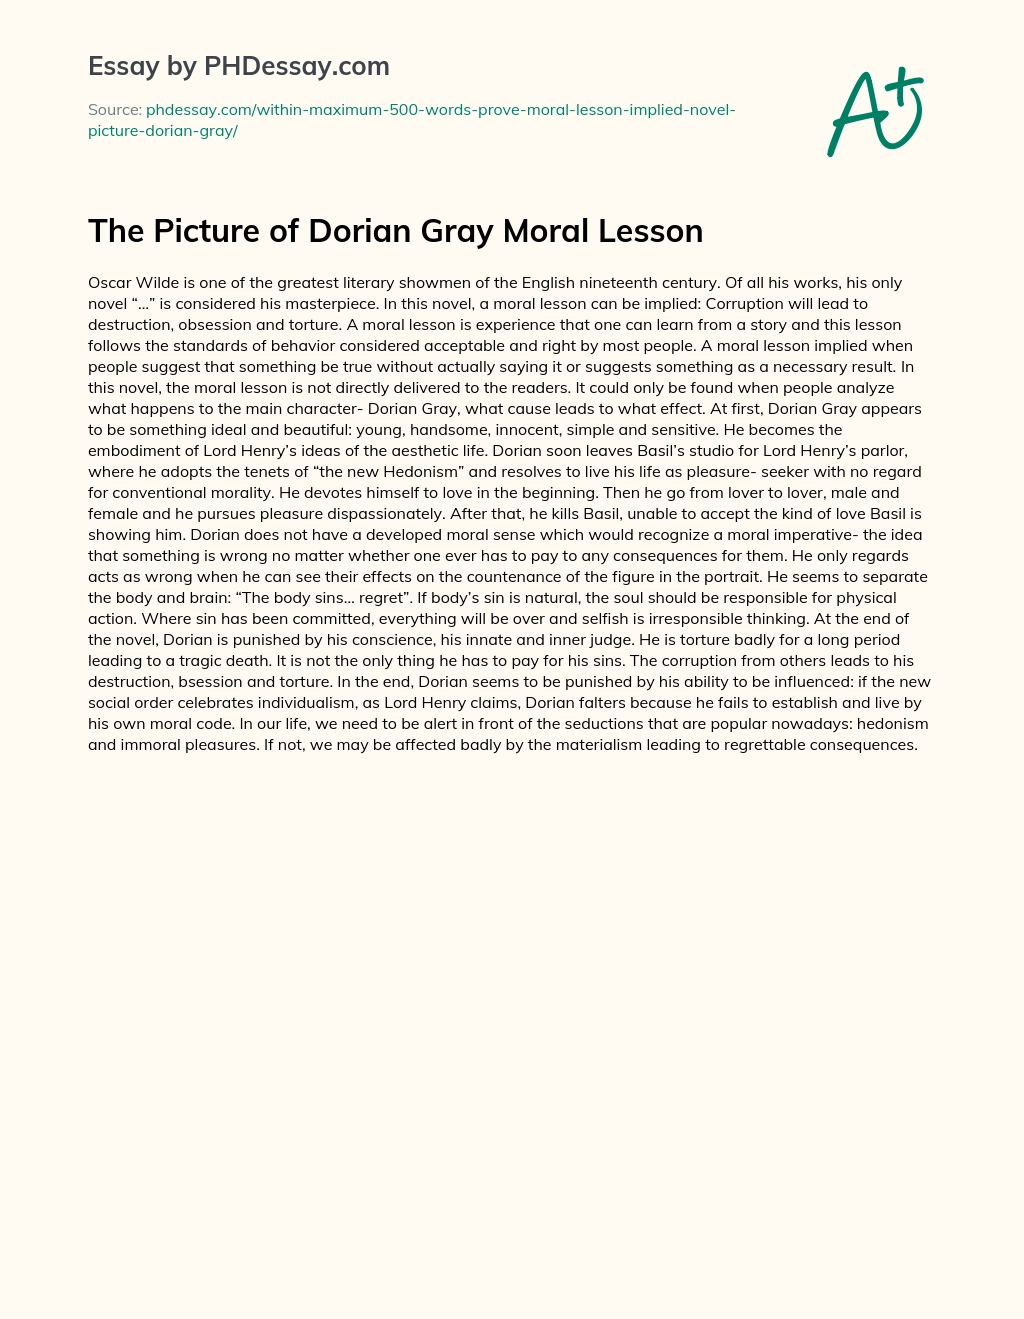 The Picture of Dorian Gray Moral Lesson essay